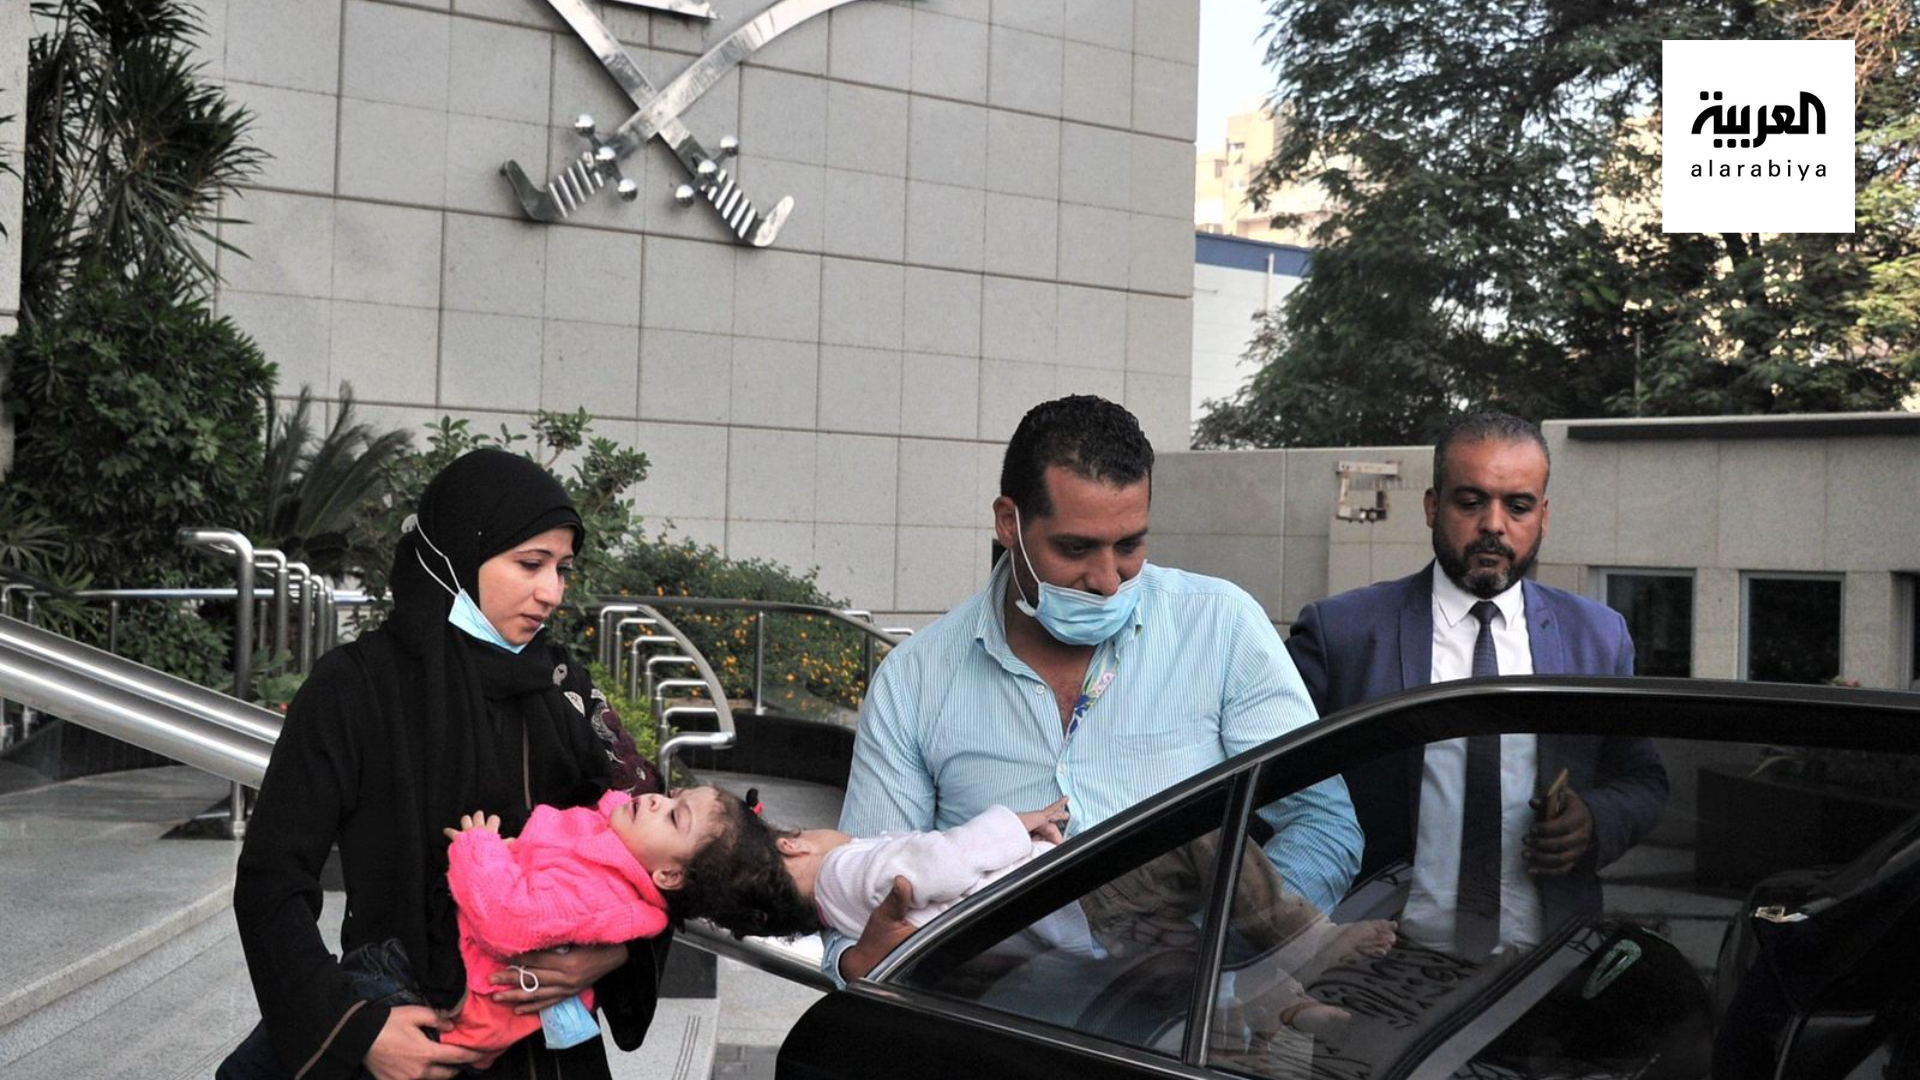 مستشفى الملك عبدالله التخصصي للأطفال